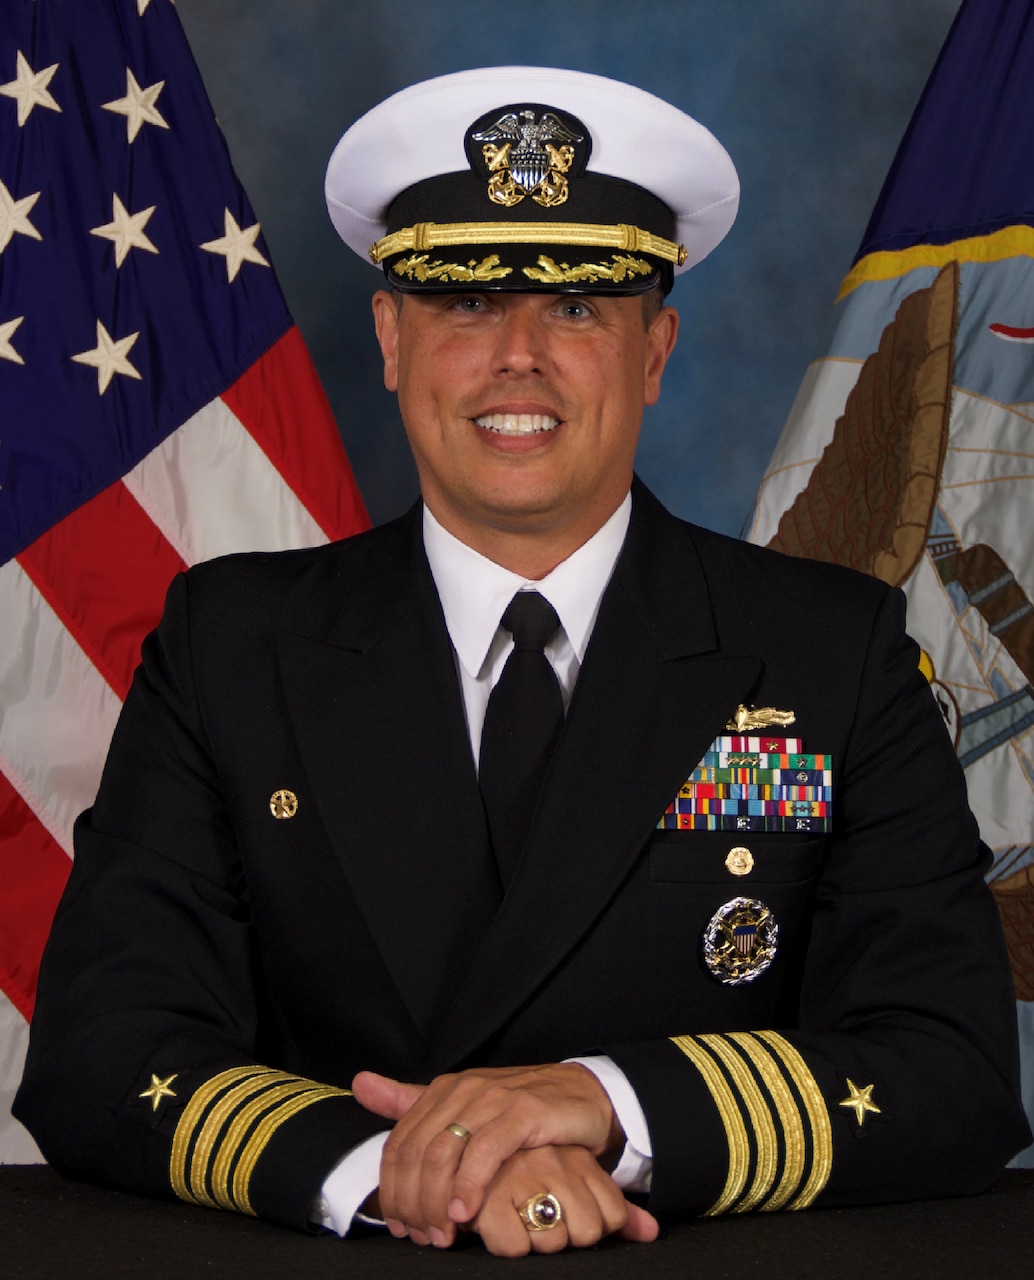 Captain Joseph M. Droll